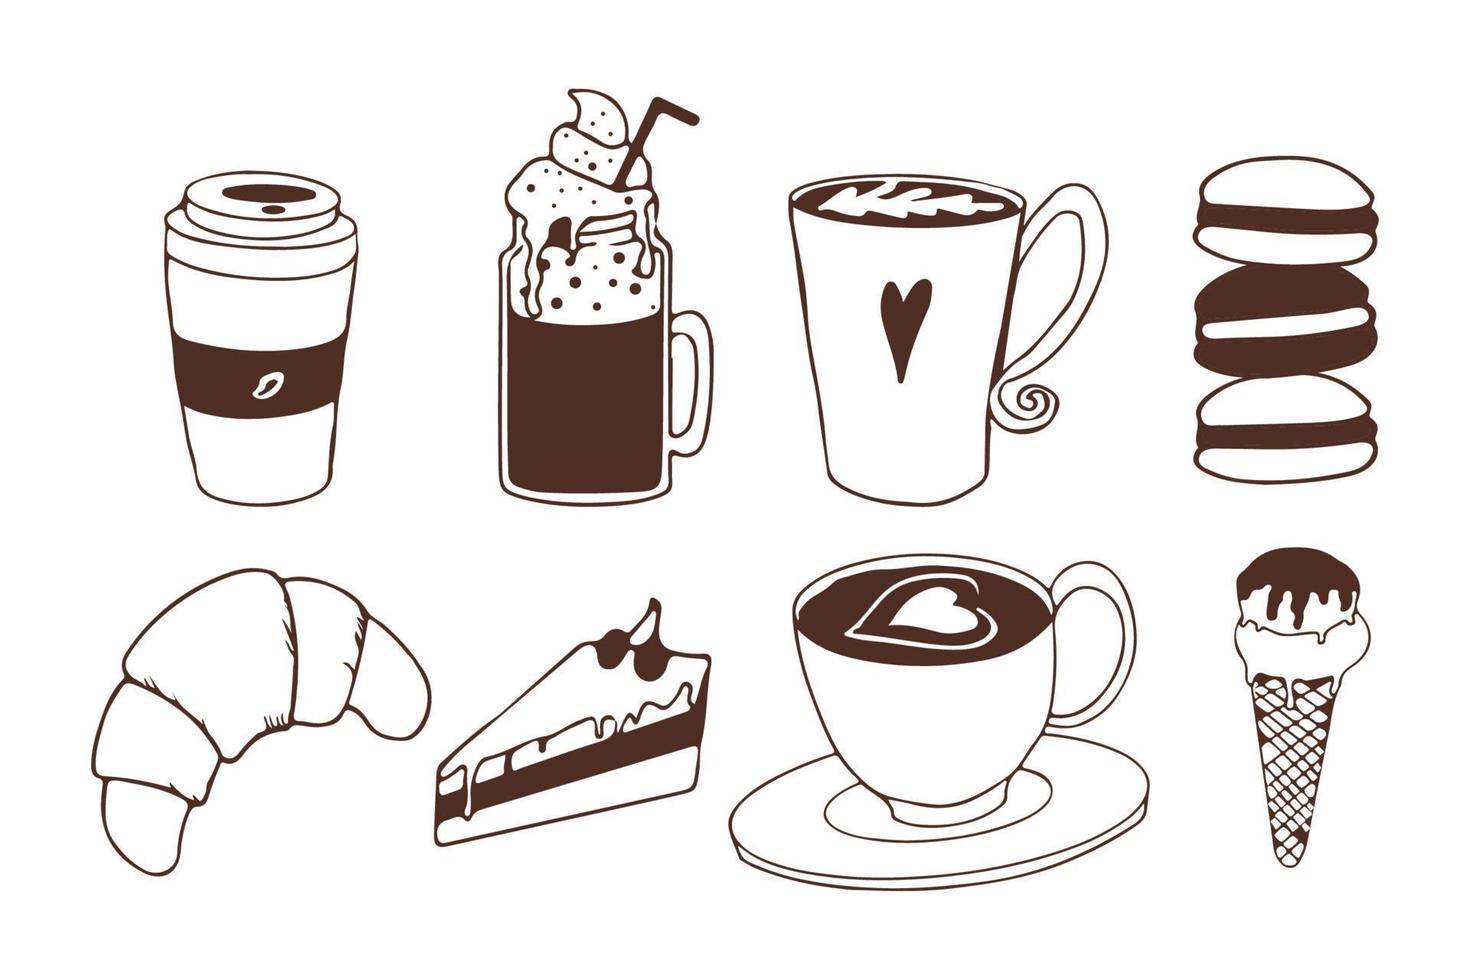 koffie en desserts in doodle stijl. collectie gebak, ijs, zoet eten en drinken. café- of winkelelementen. vector illustratie